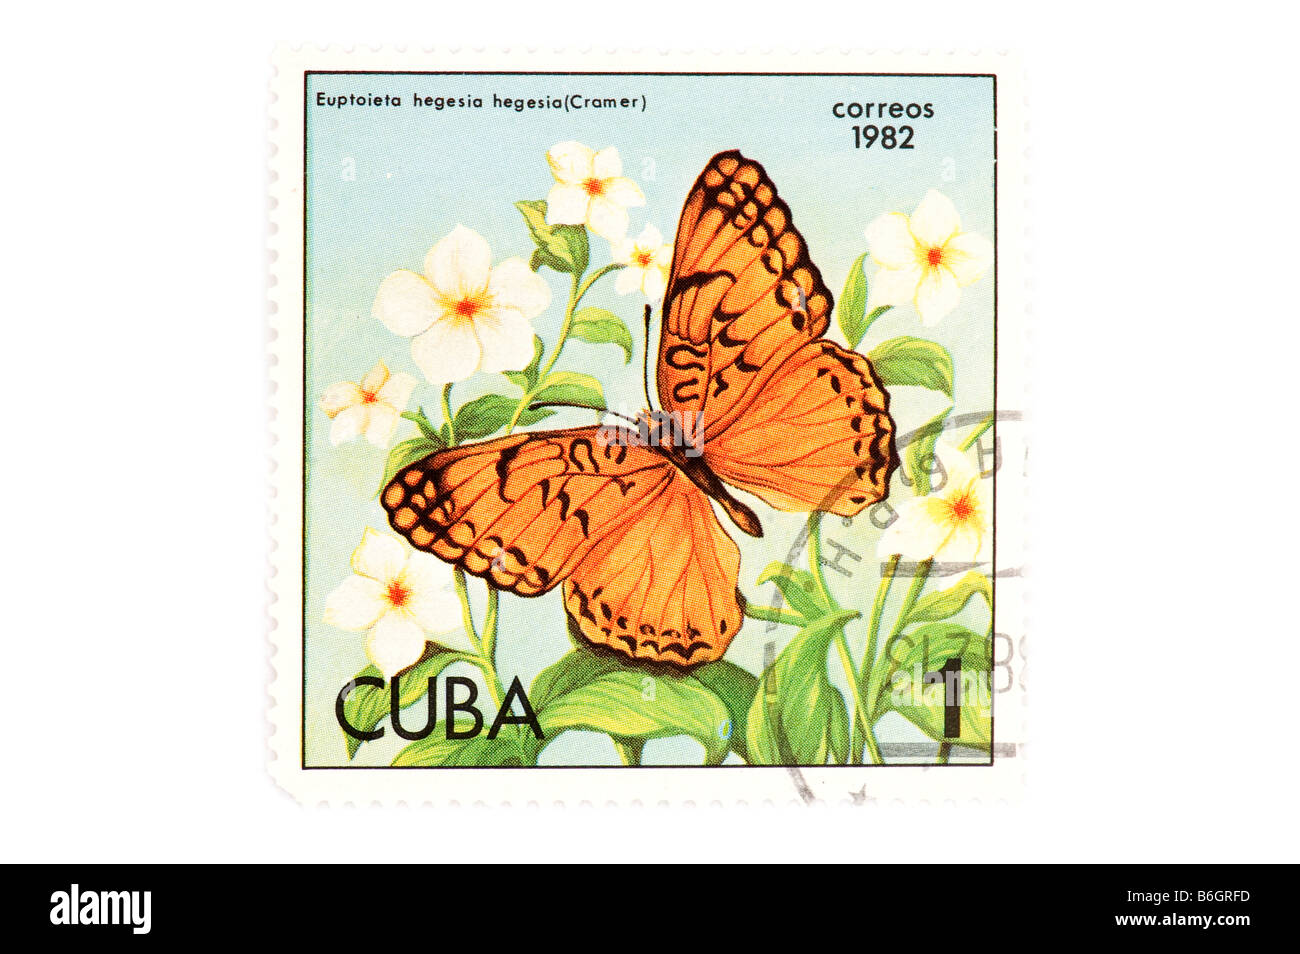 Objet sur timbre cubain blanc Banque D'Images